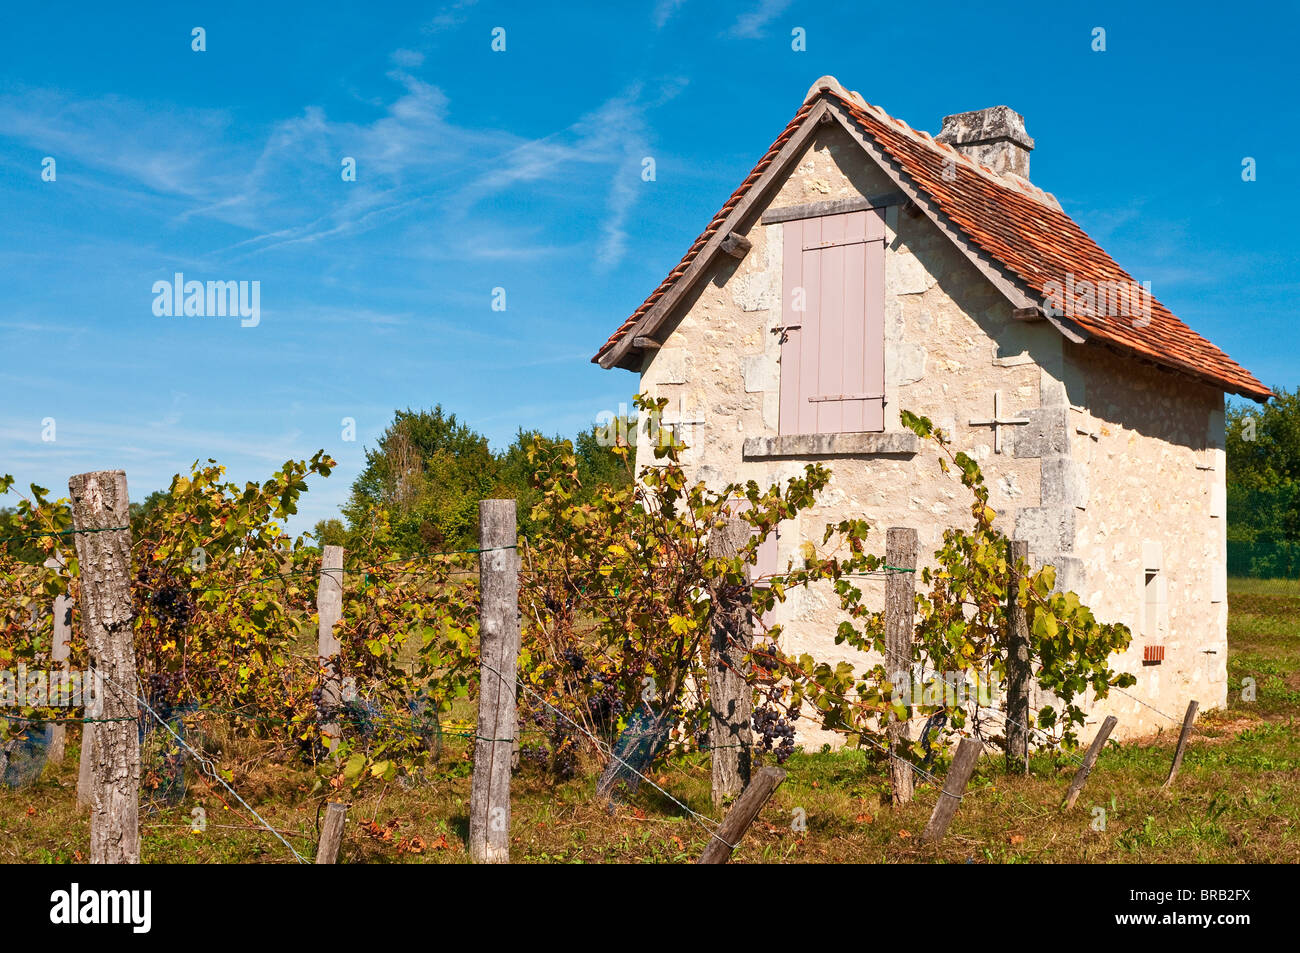 Petite maison et de vignobles - Indre-et-Loire, France. Banque D'Images